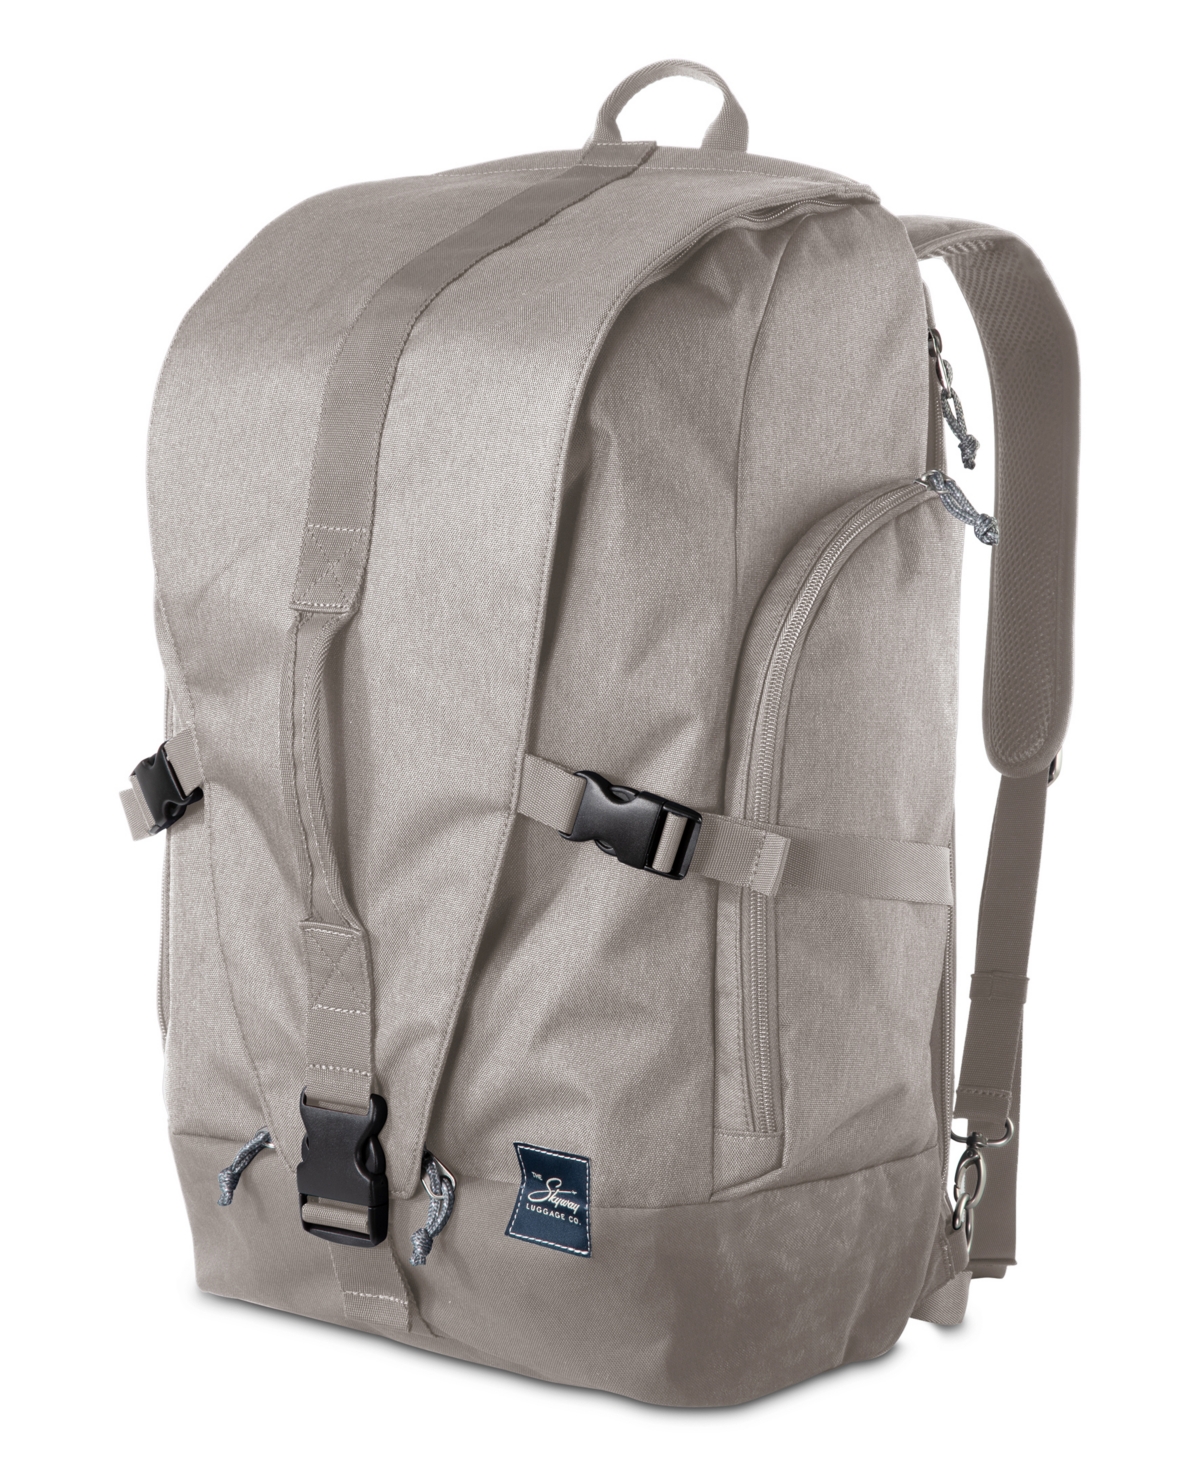 Rainier Weekender Backpack, 43" - Tahoe Blue